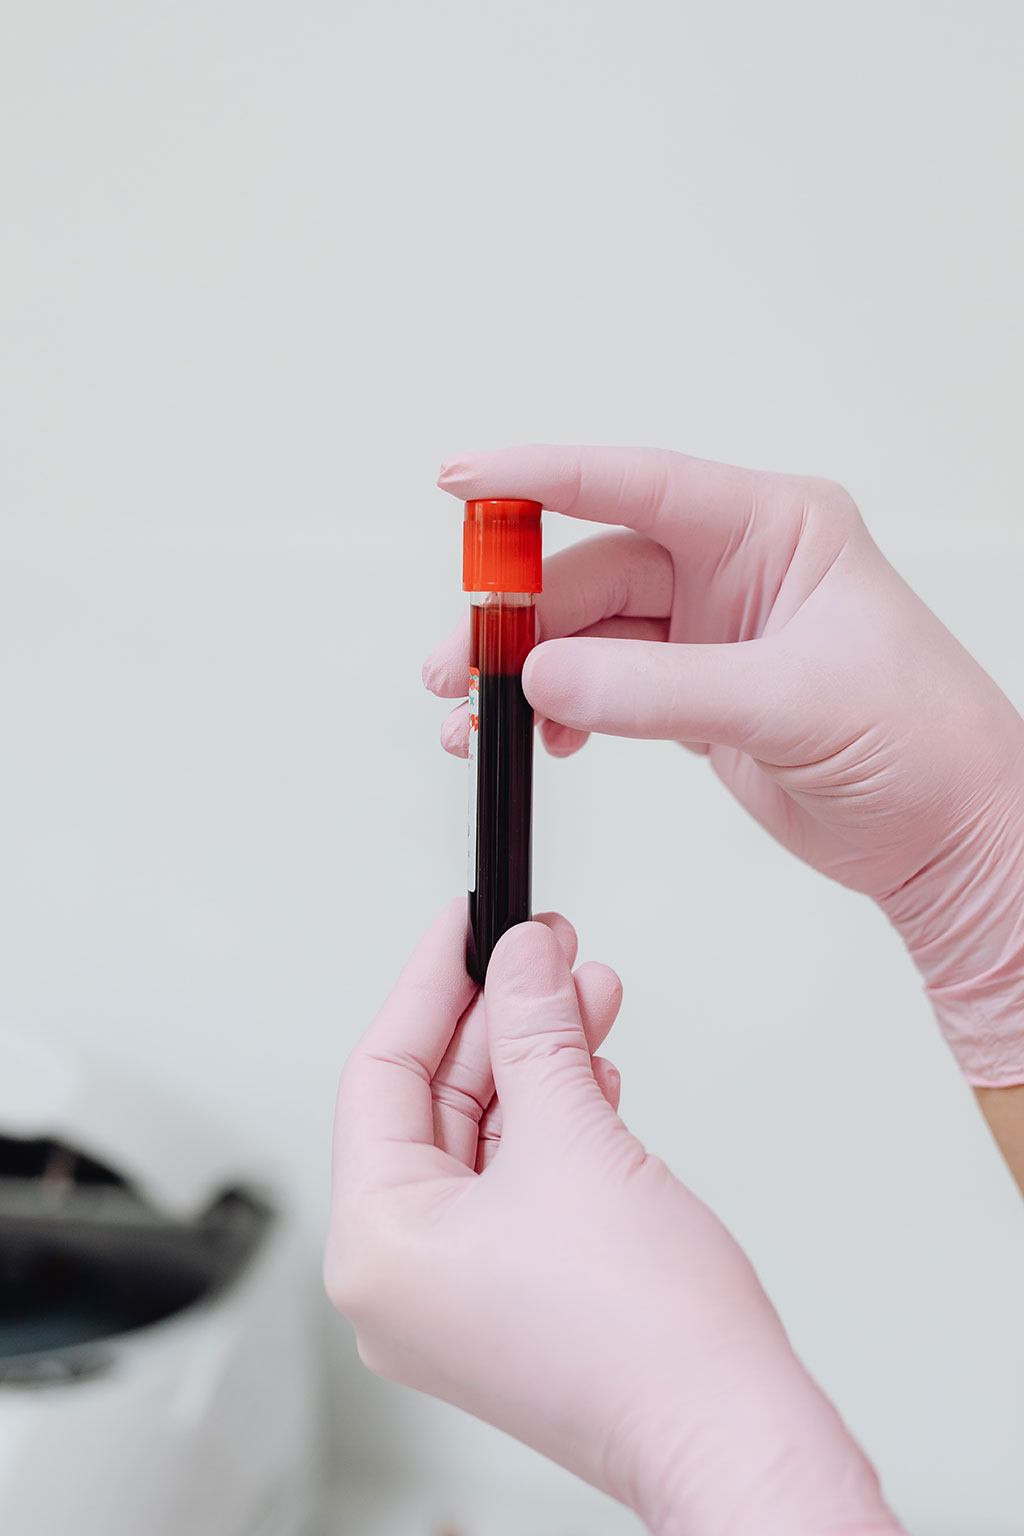 Imagen: El análisis de sangre para detectar el ADNtc podría ayudar a las personas con TEGI avanzado a elegir su tratamiento dirigido de segunda línea (Fotografía cortesía de Pexels)